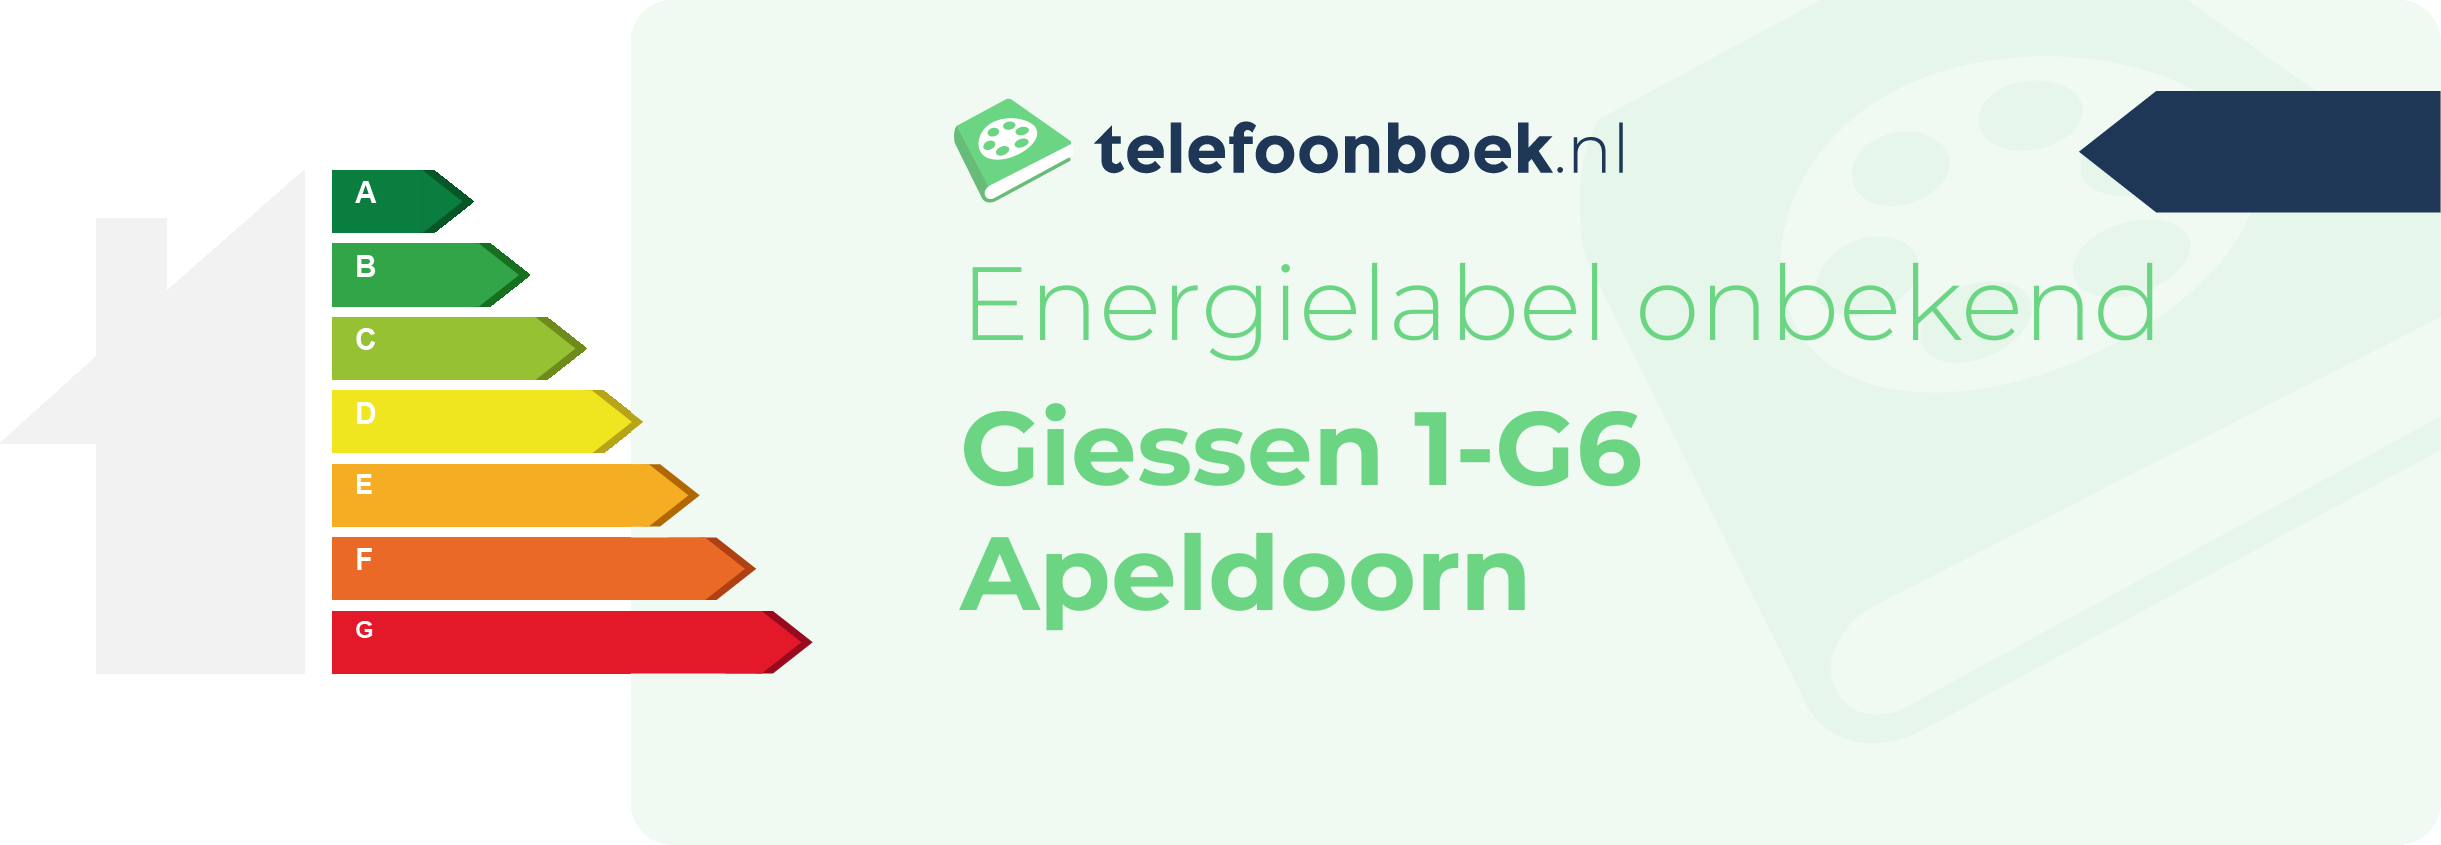 Energielabel Giessen 1-G6 Apeldoorn